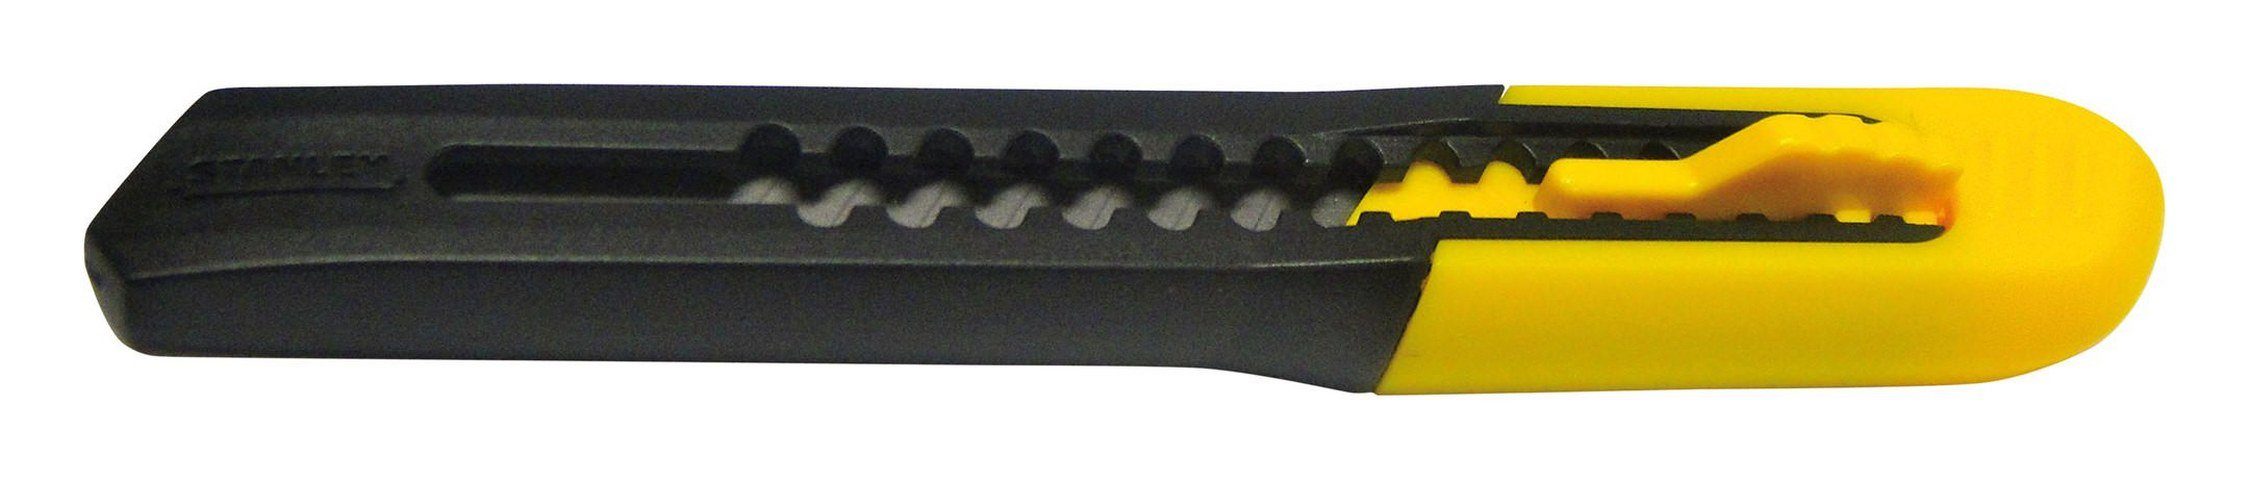 STANLEY Cuttermesser, Klinge: 0.9 cm, SM 9 mm